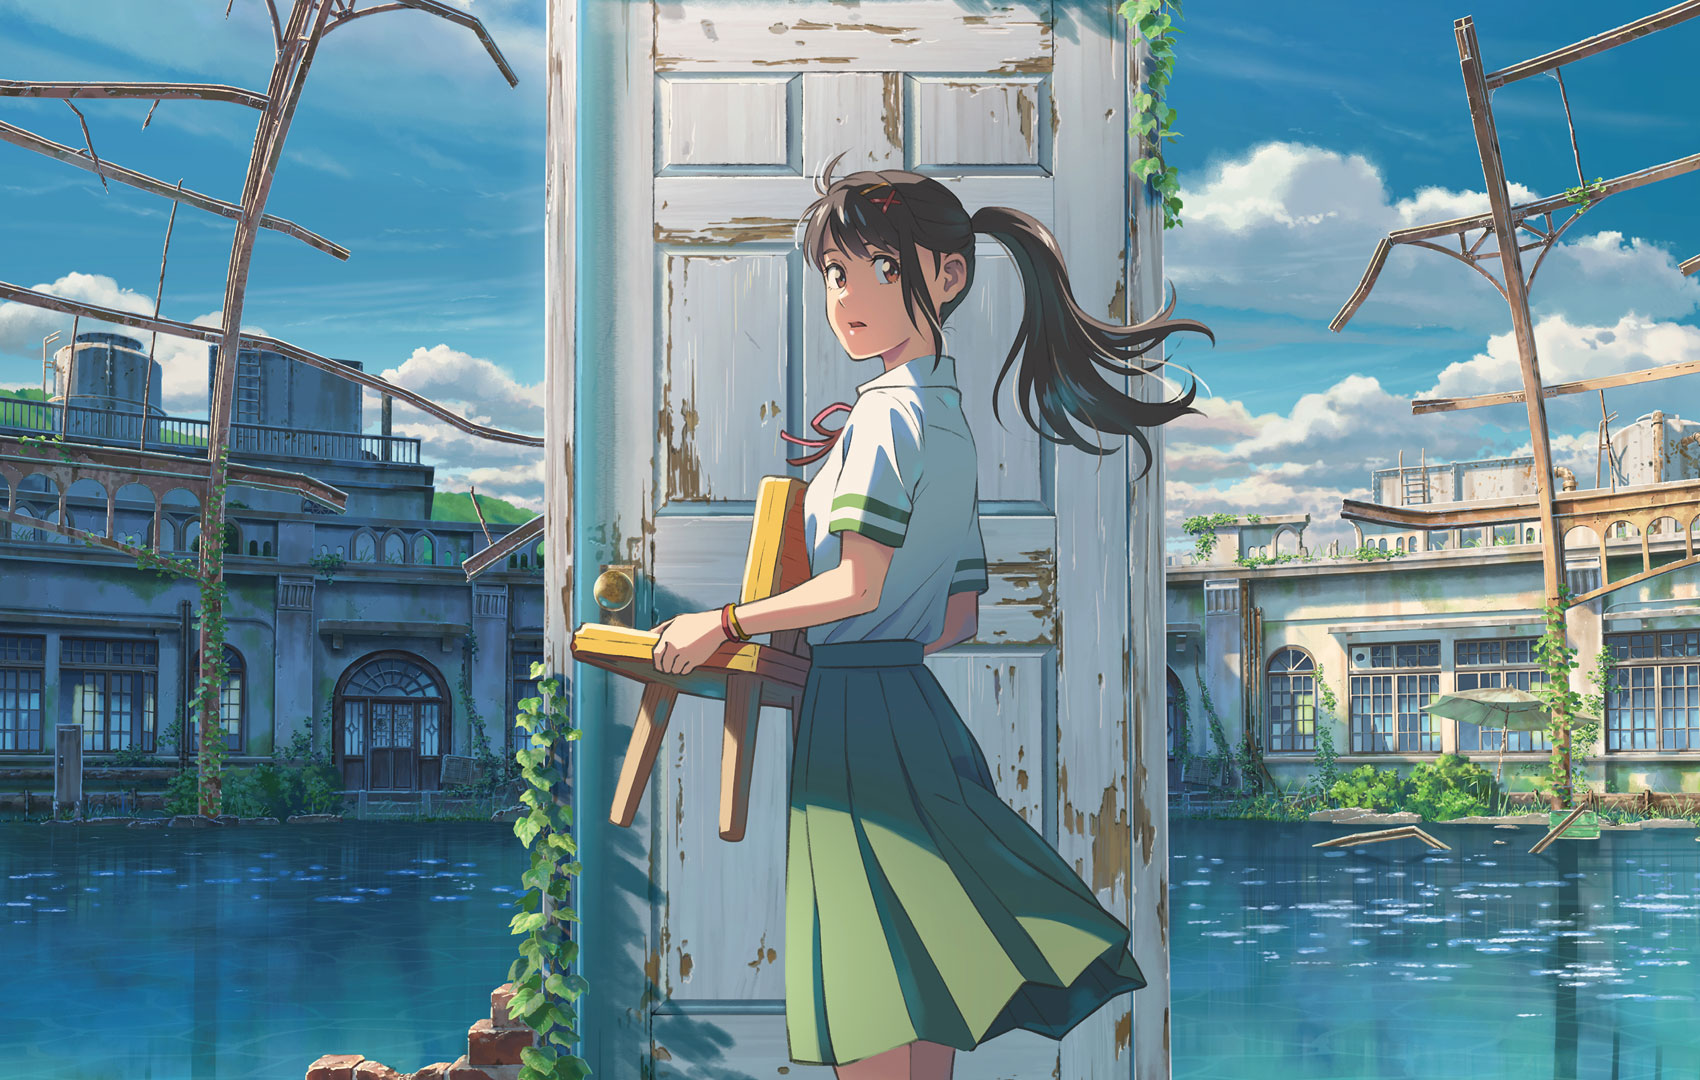 Japanischenr Anime-Stil: Ein Mädchen in Schuluniform steht mit einem Stuhl in der Hand vor einer verschlossenen Holztür. Die Tür steht alleine im Raum, im Hintergrund sieht man Wasser und eine verfallene Häuserfront.